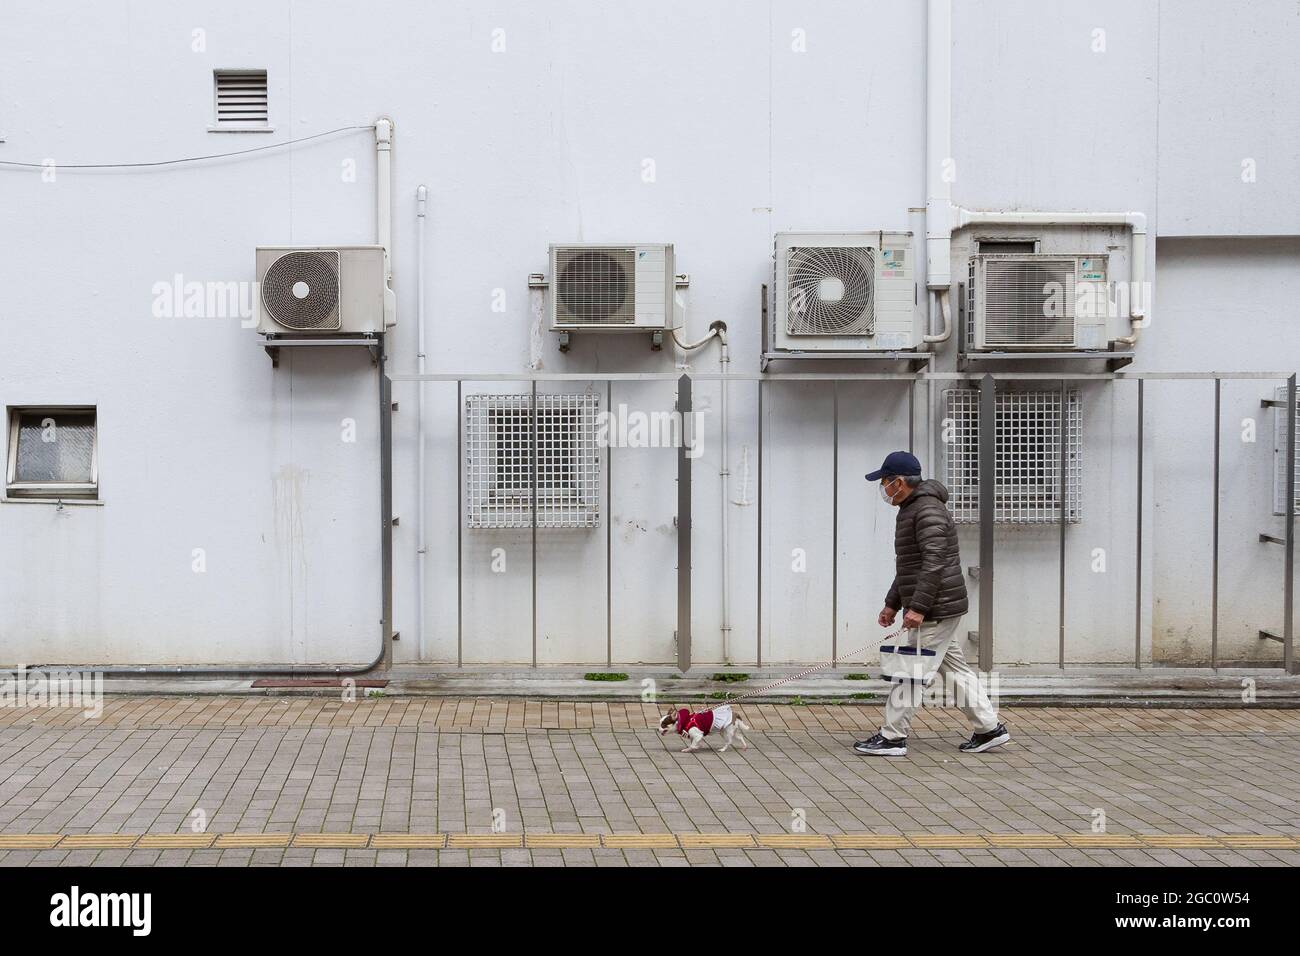 Un uomo giapponese più anziano (indossando una maschera chirurgica) cammina il suo piccolo cane oltre un muro con unità di aria condizionata su di esso a Yamato, Kanagawa, Giappone. Foto Stock